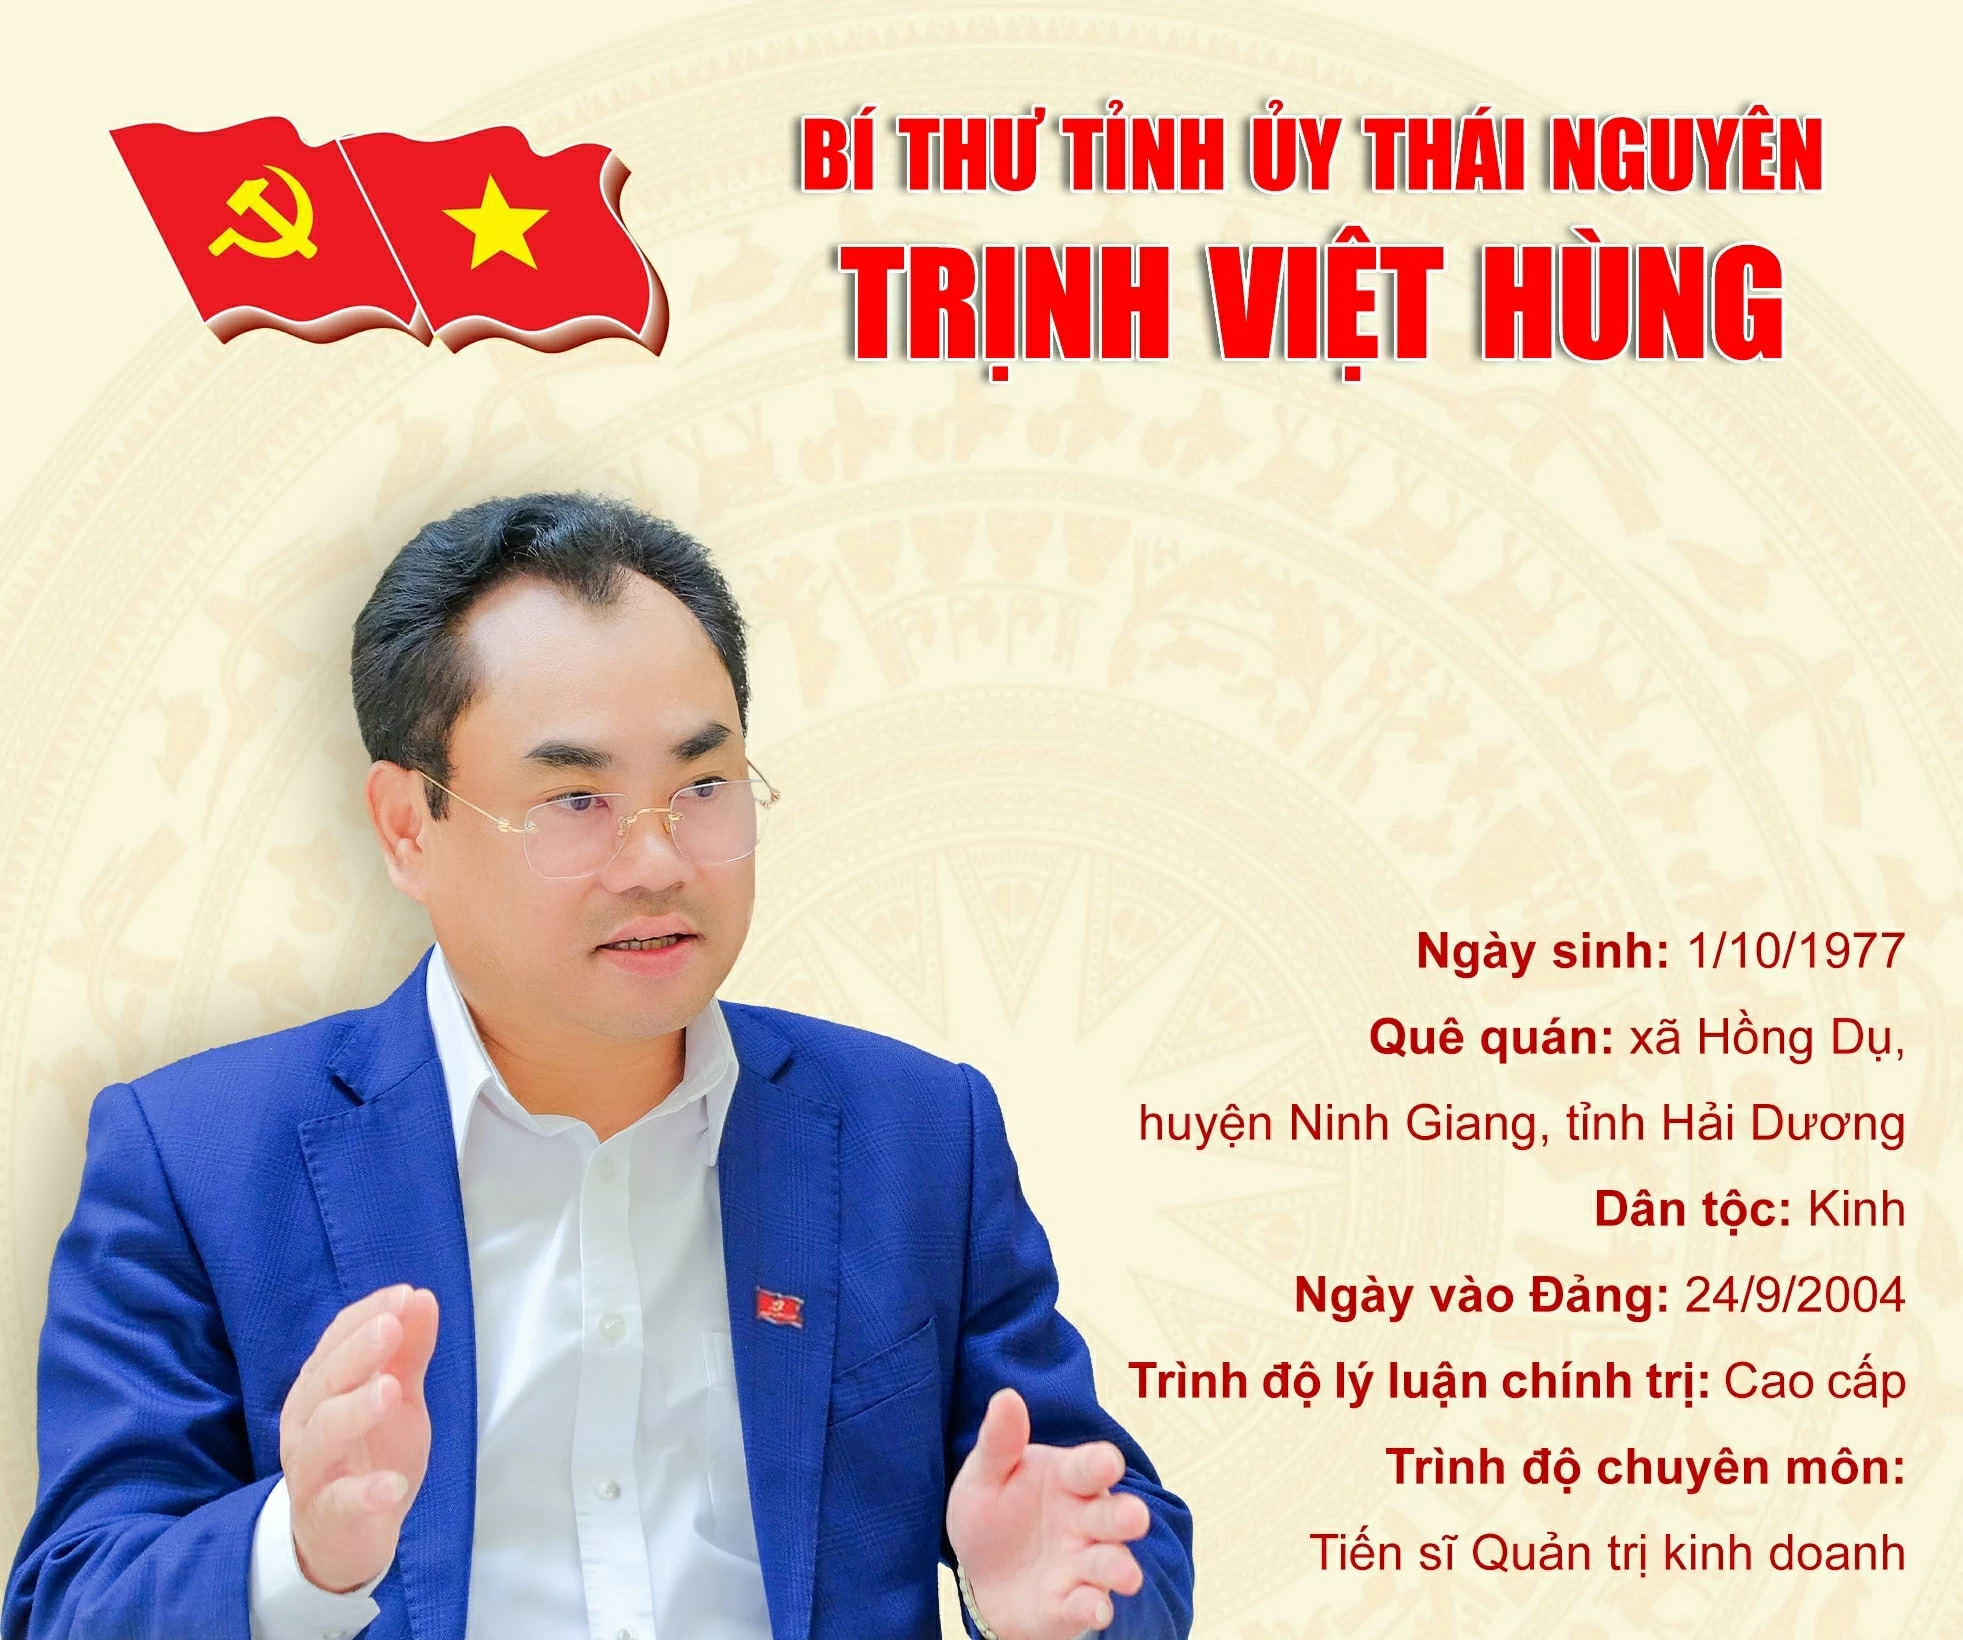 [Infographic]: Đồng chí Trịnh Việt Hùng giữ chức vụ Bí Thư Tỉnh ủy Thái Nguyên